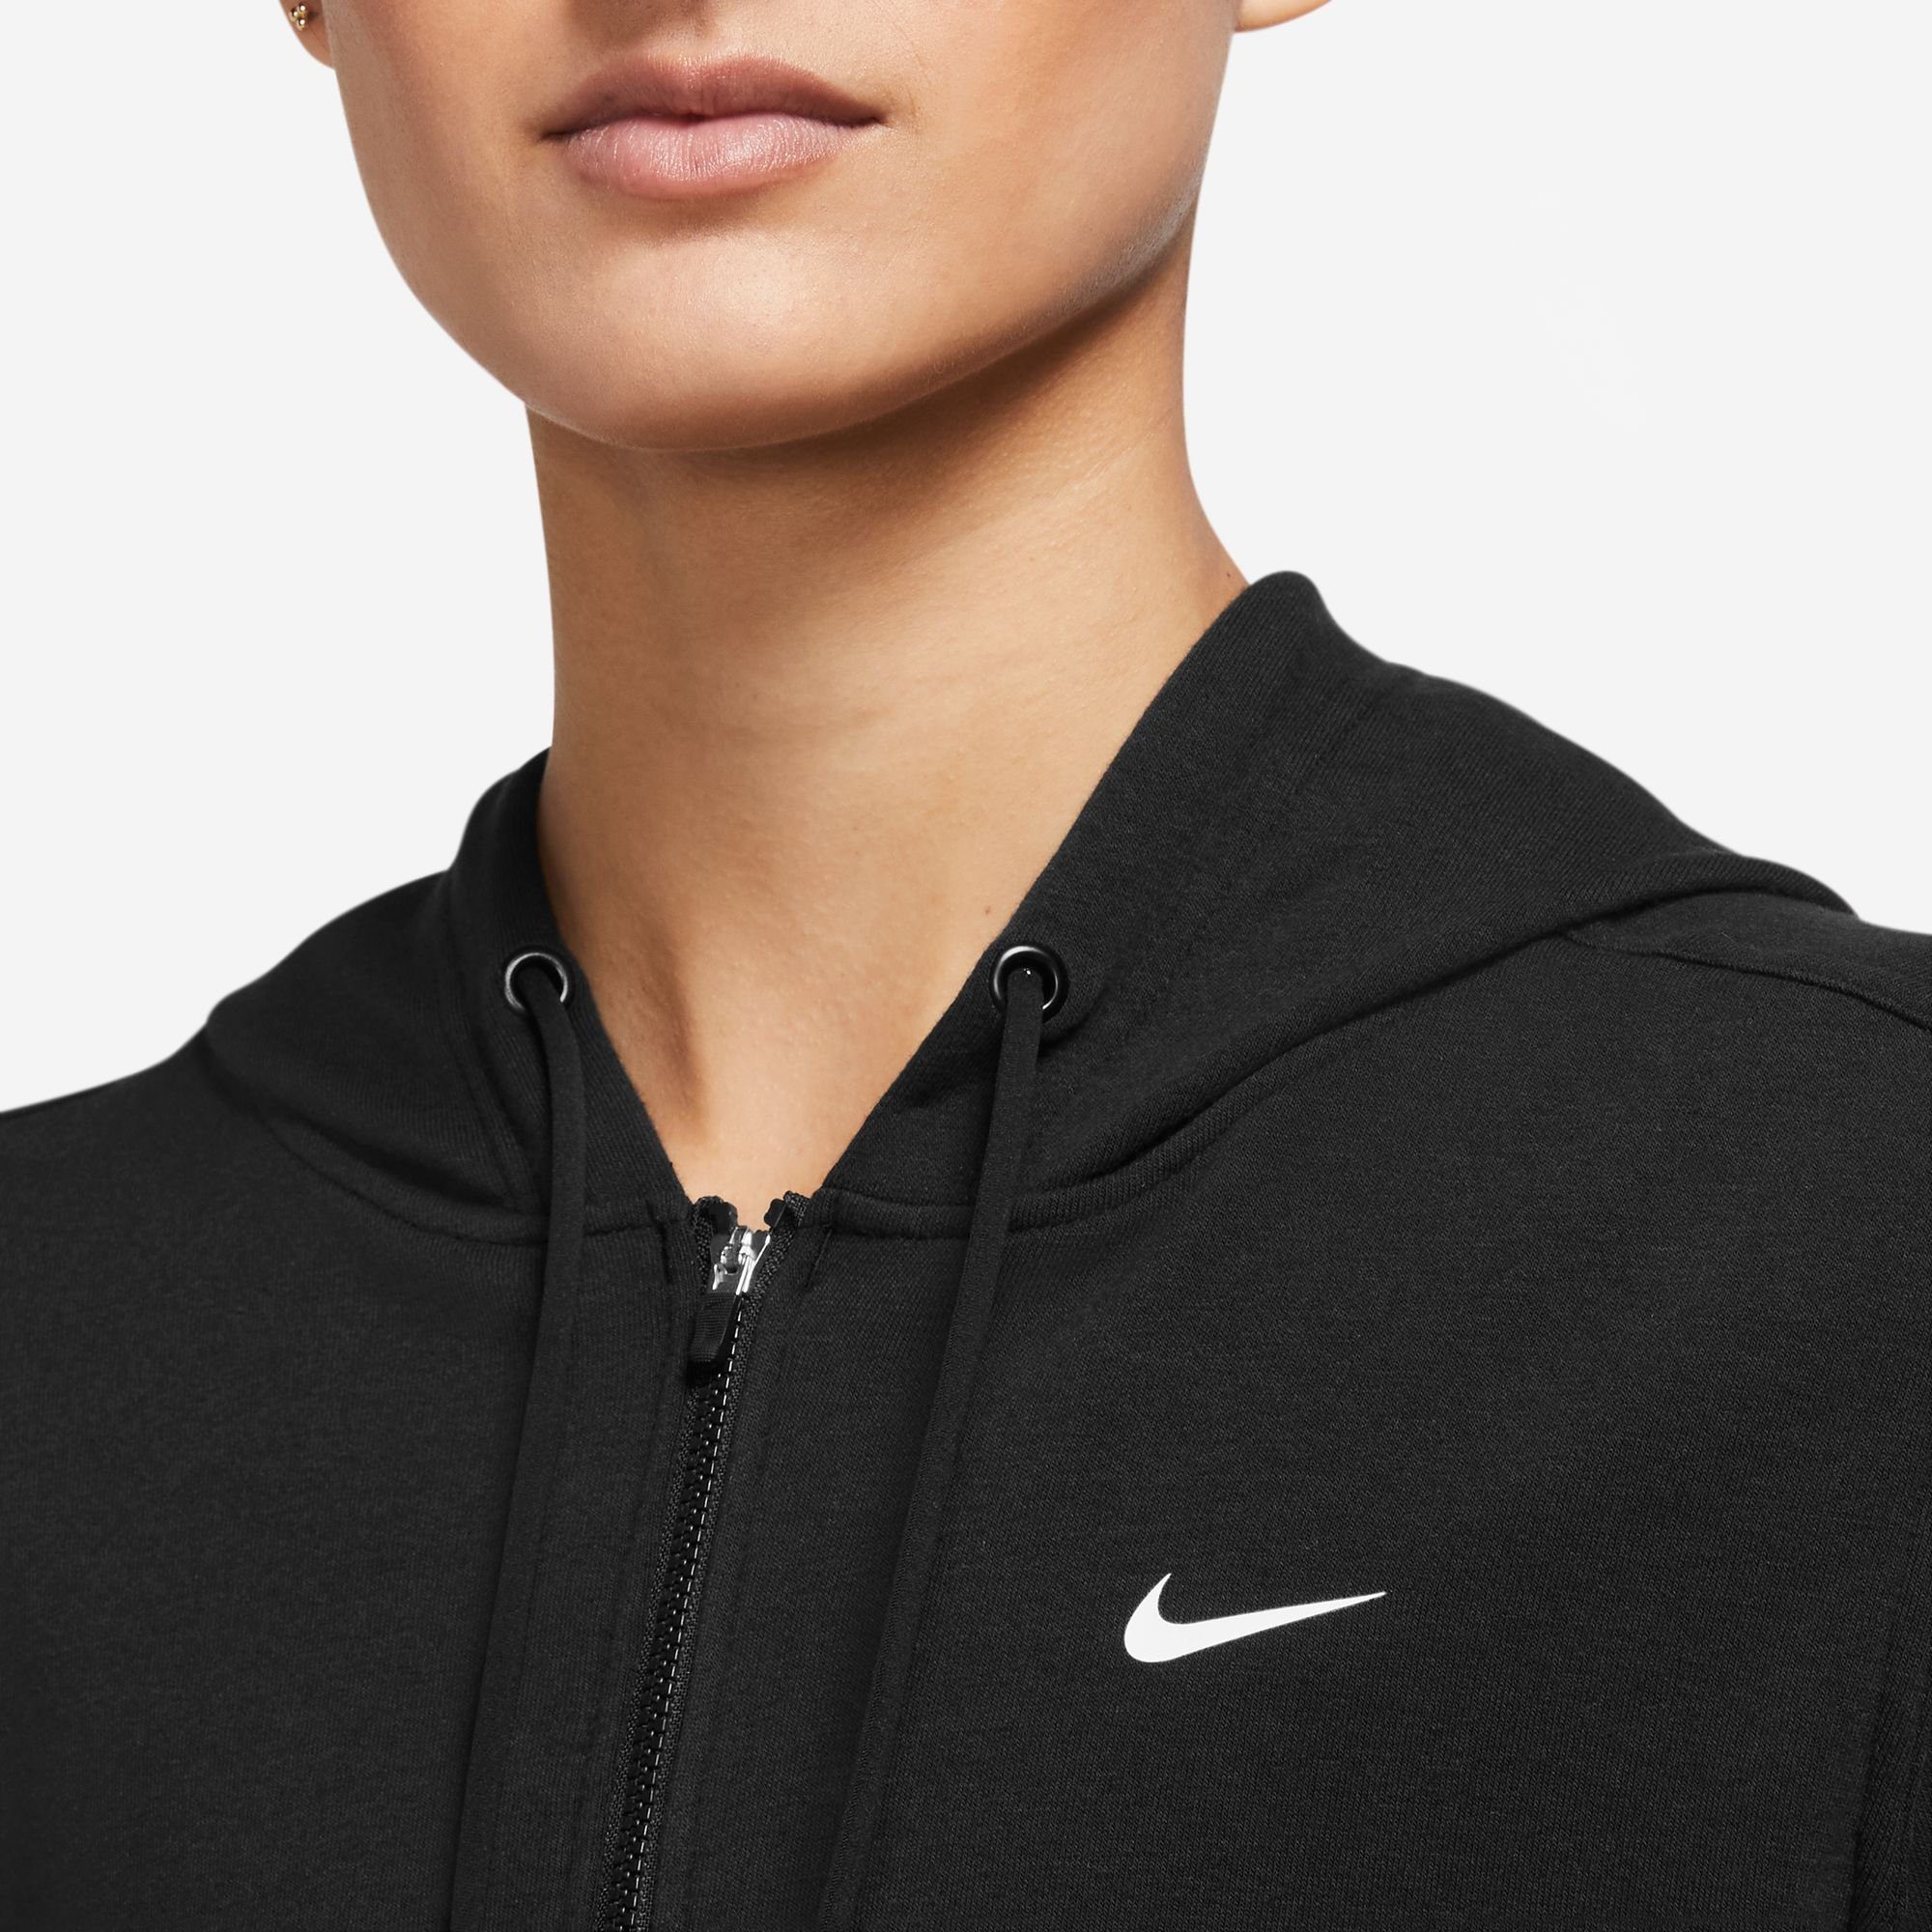 FULL-ZIP BLACK/WHITE DRI-FIT WOMEN'S Nike ONE HOODIE Trainingsjacke